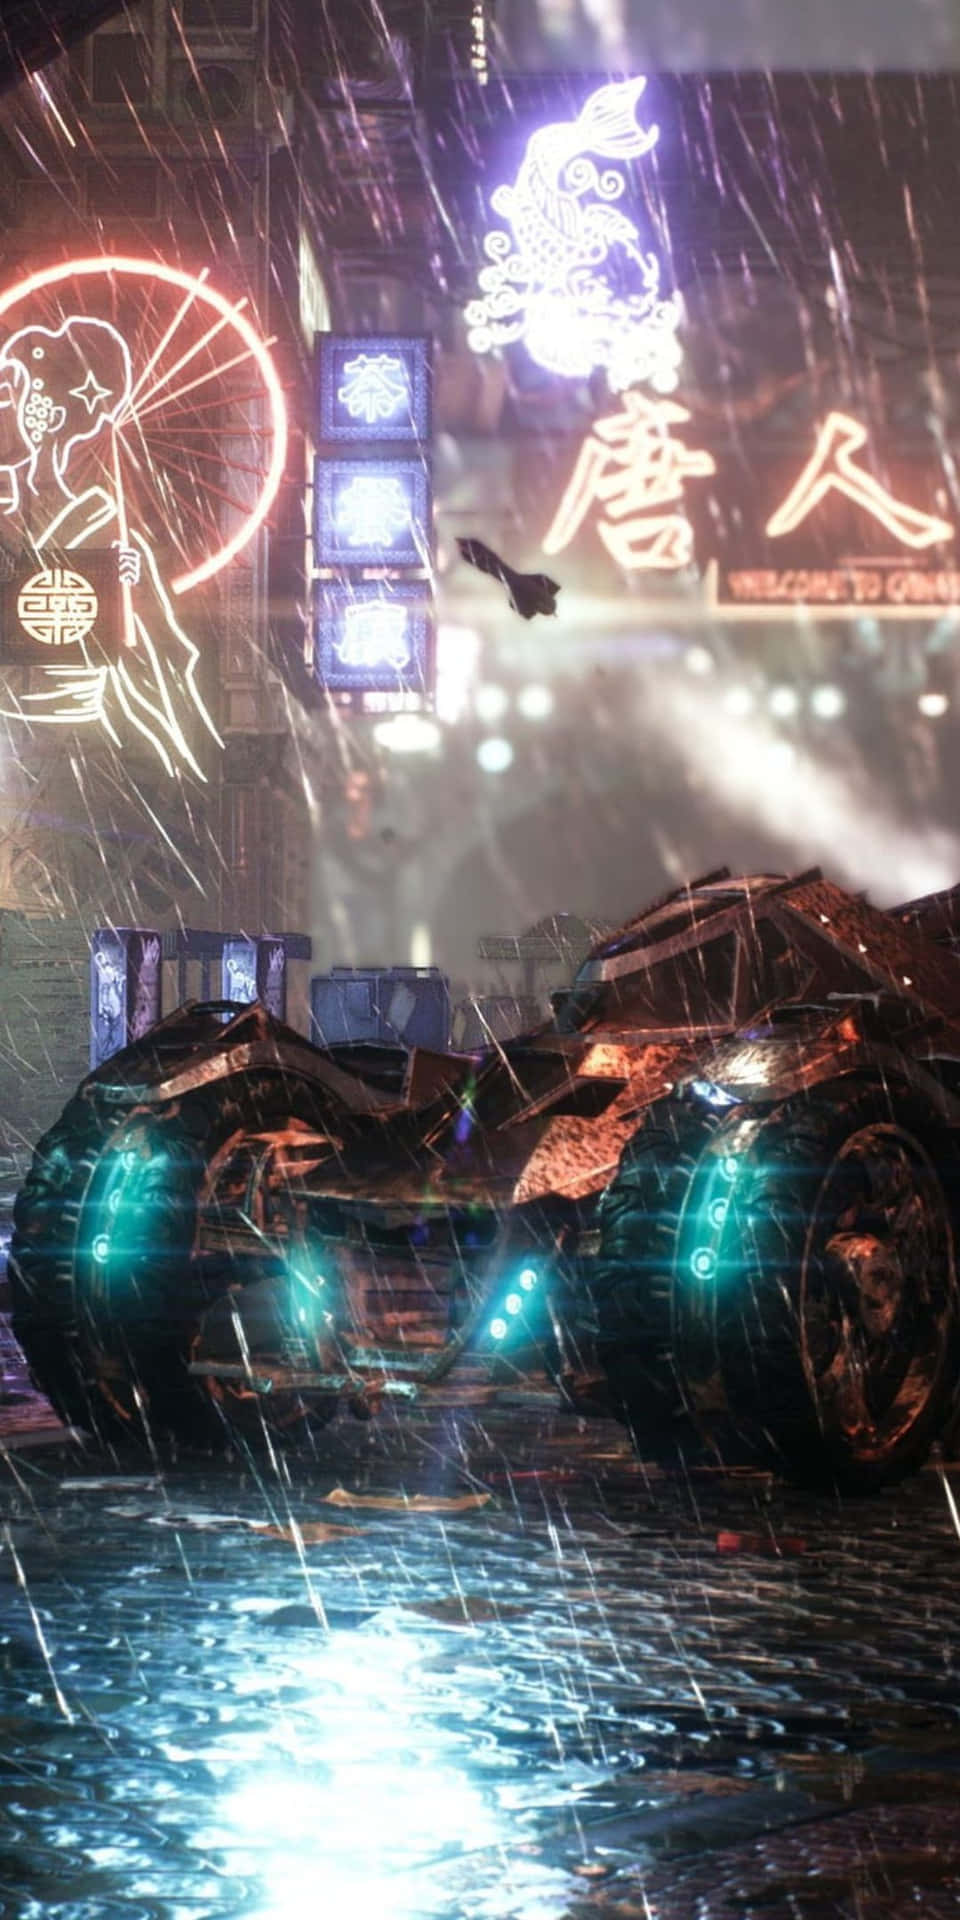 A futuristic take on the iconic Batmobile